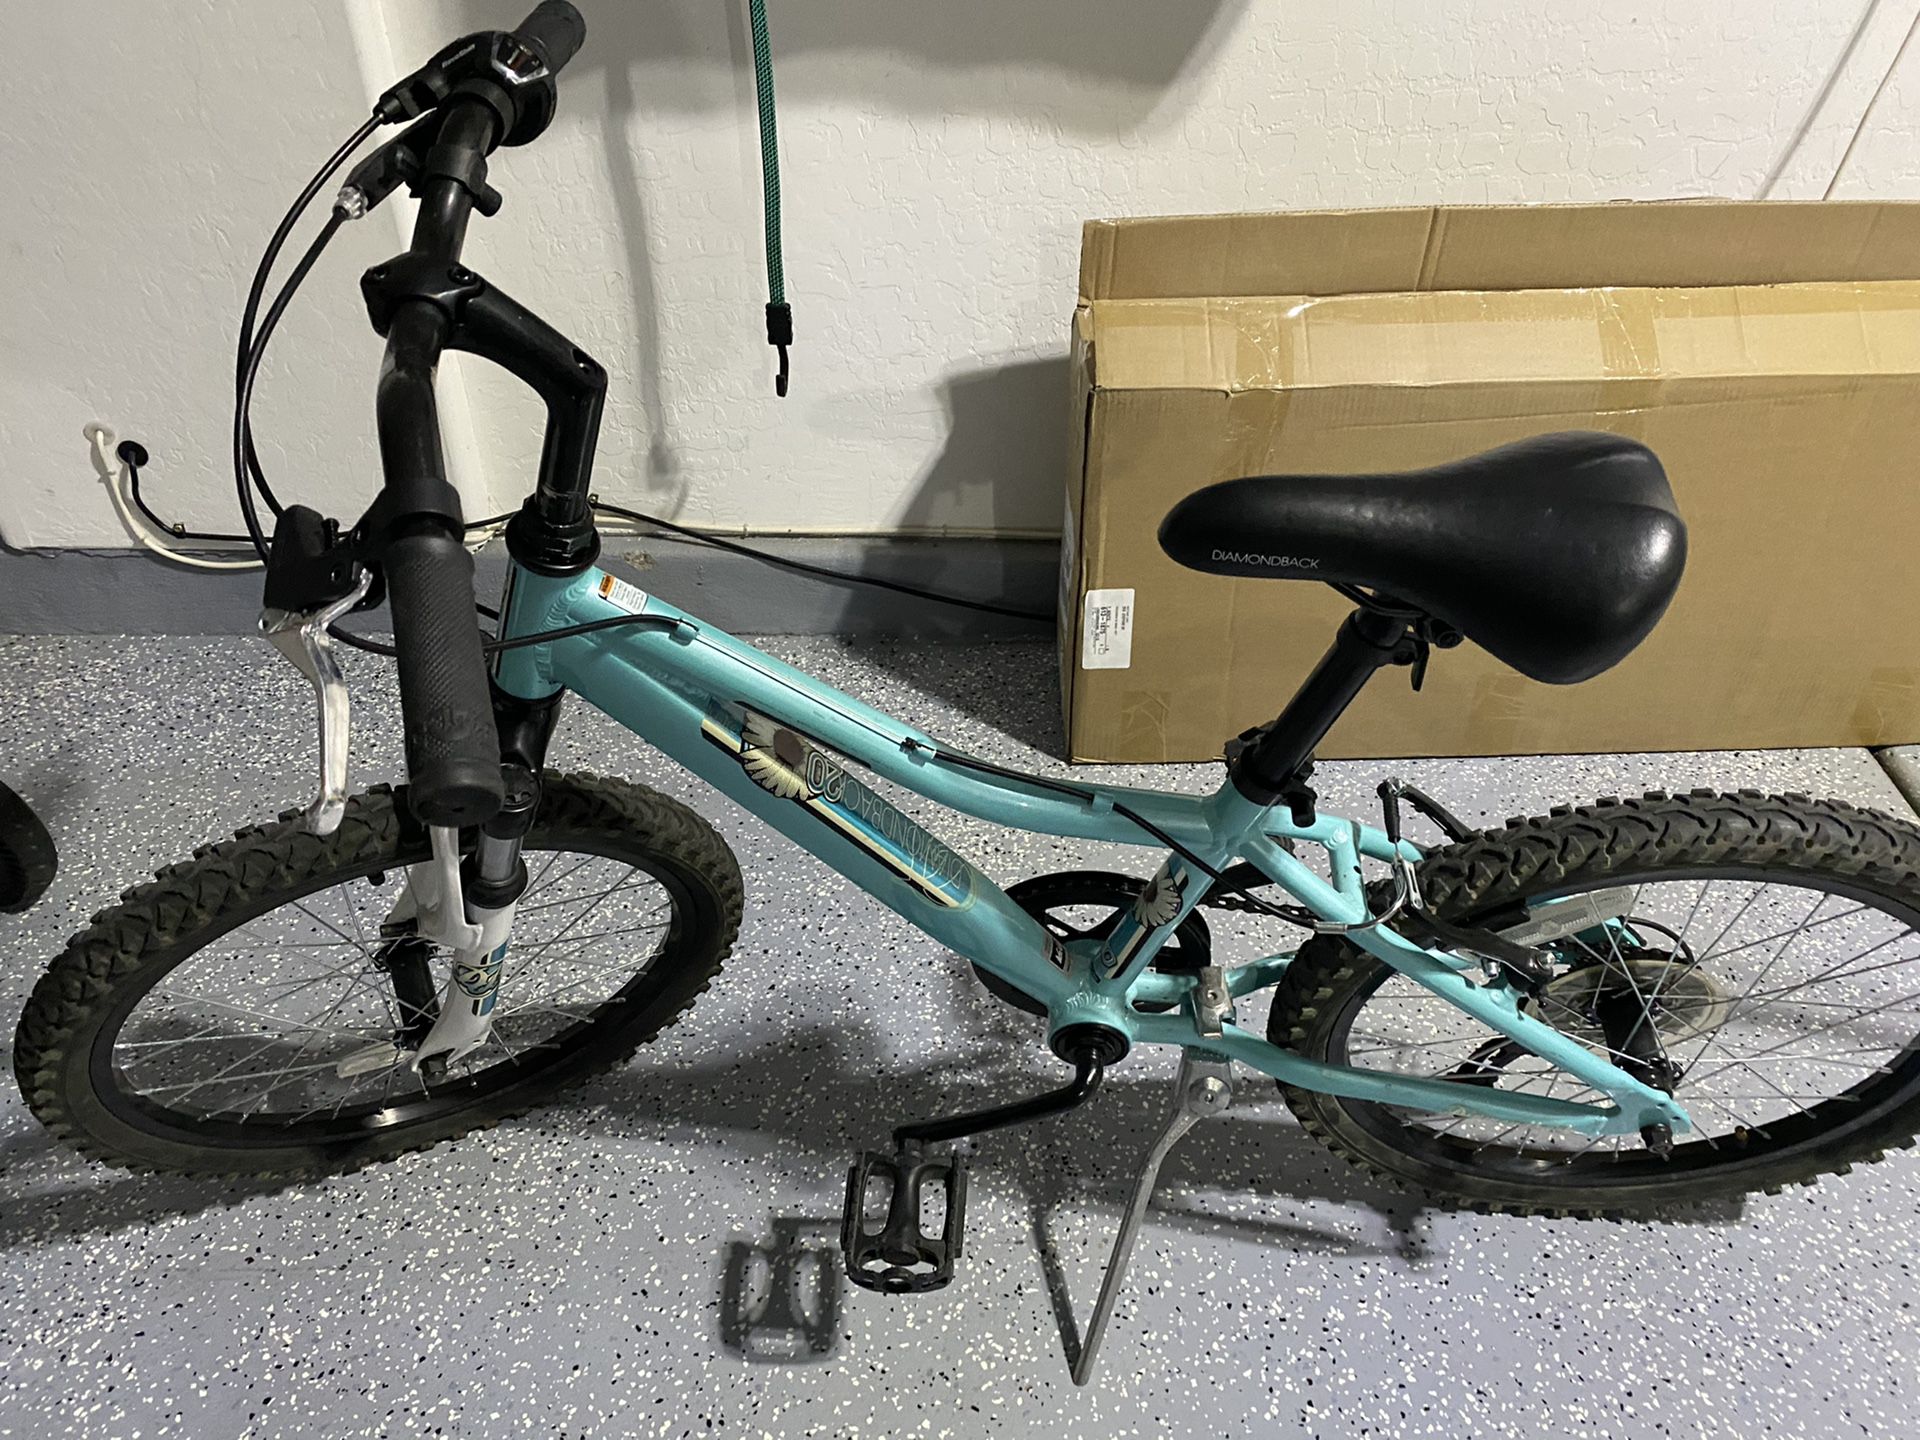 Girls 20” Diamondback bike. Purchased from REI.